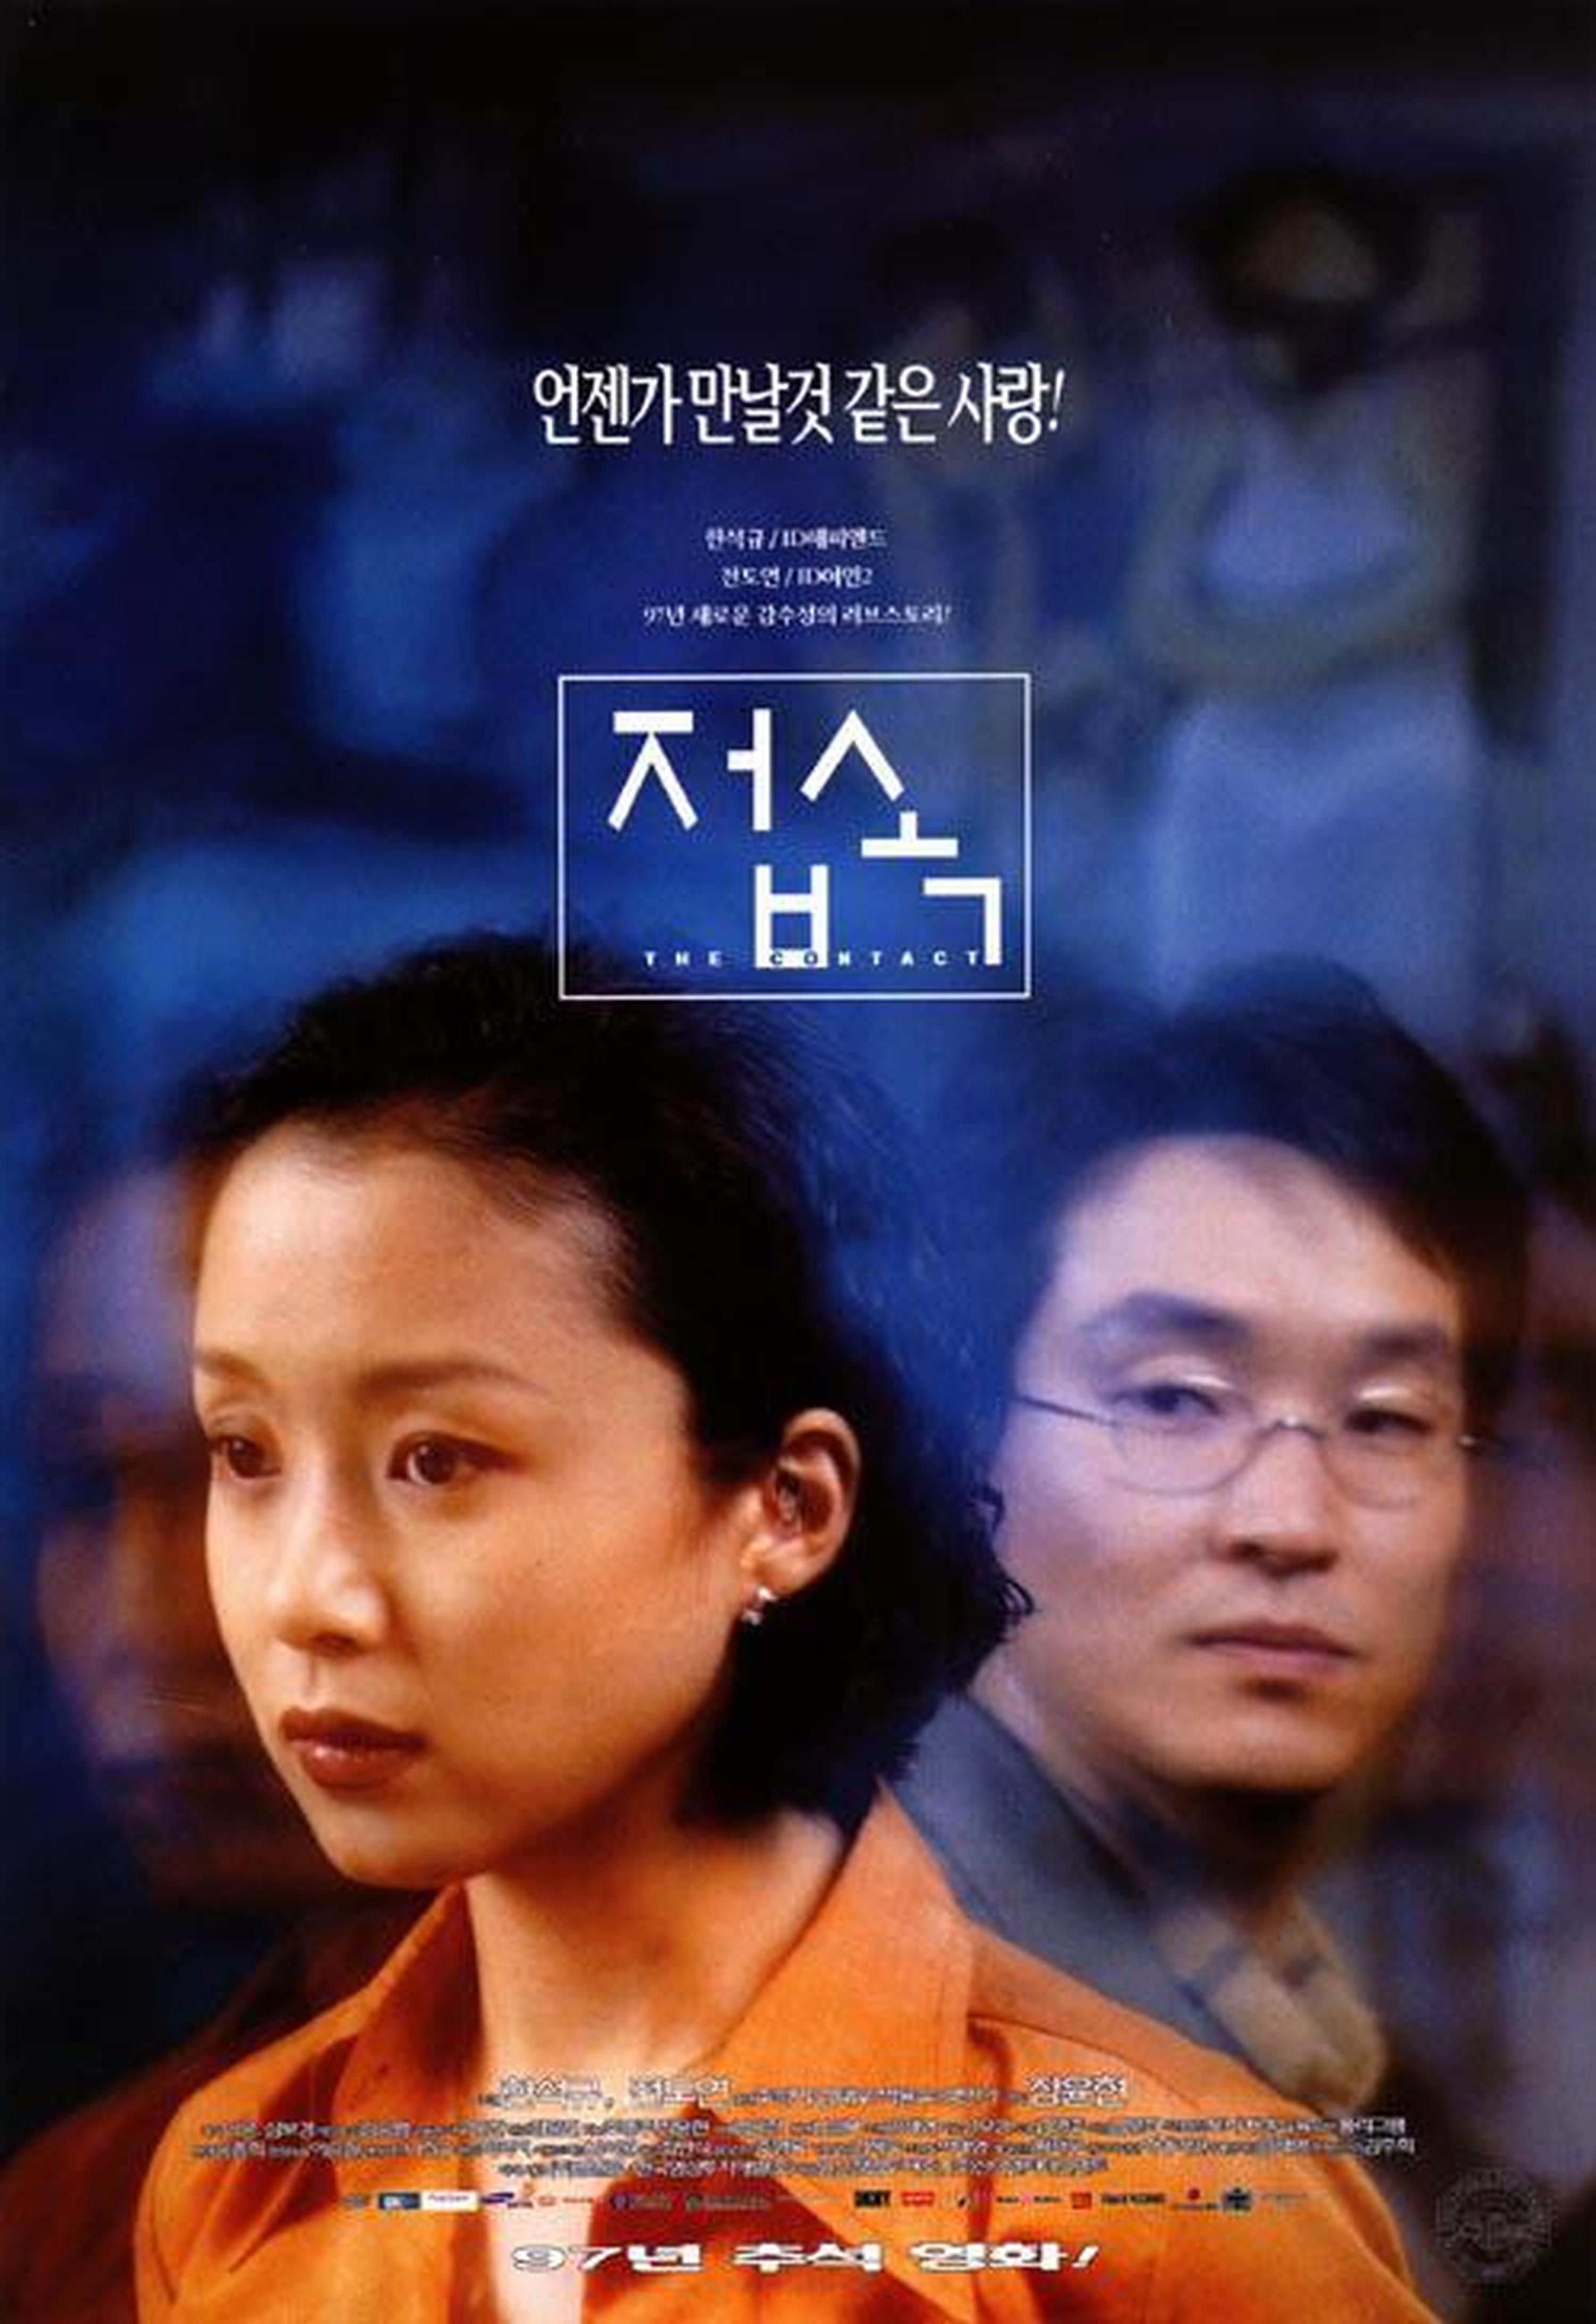 【1990-2000】《伤心街角恋人》 (1997) 导演张允炫。《触不到的恋人》对该片有模仿之嫌。